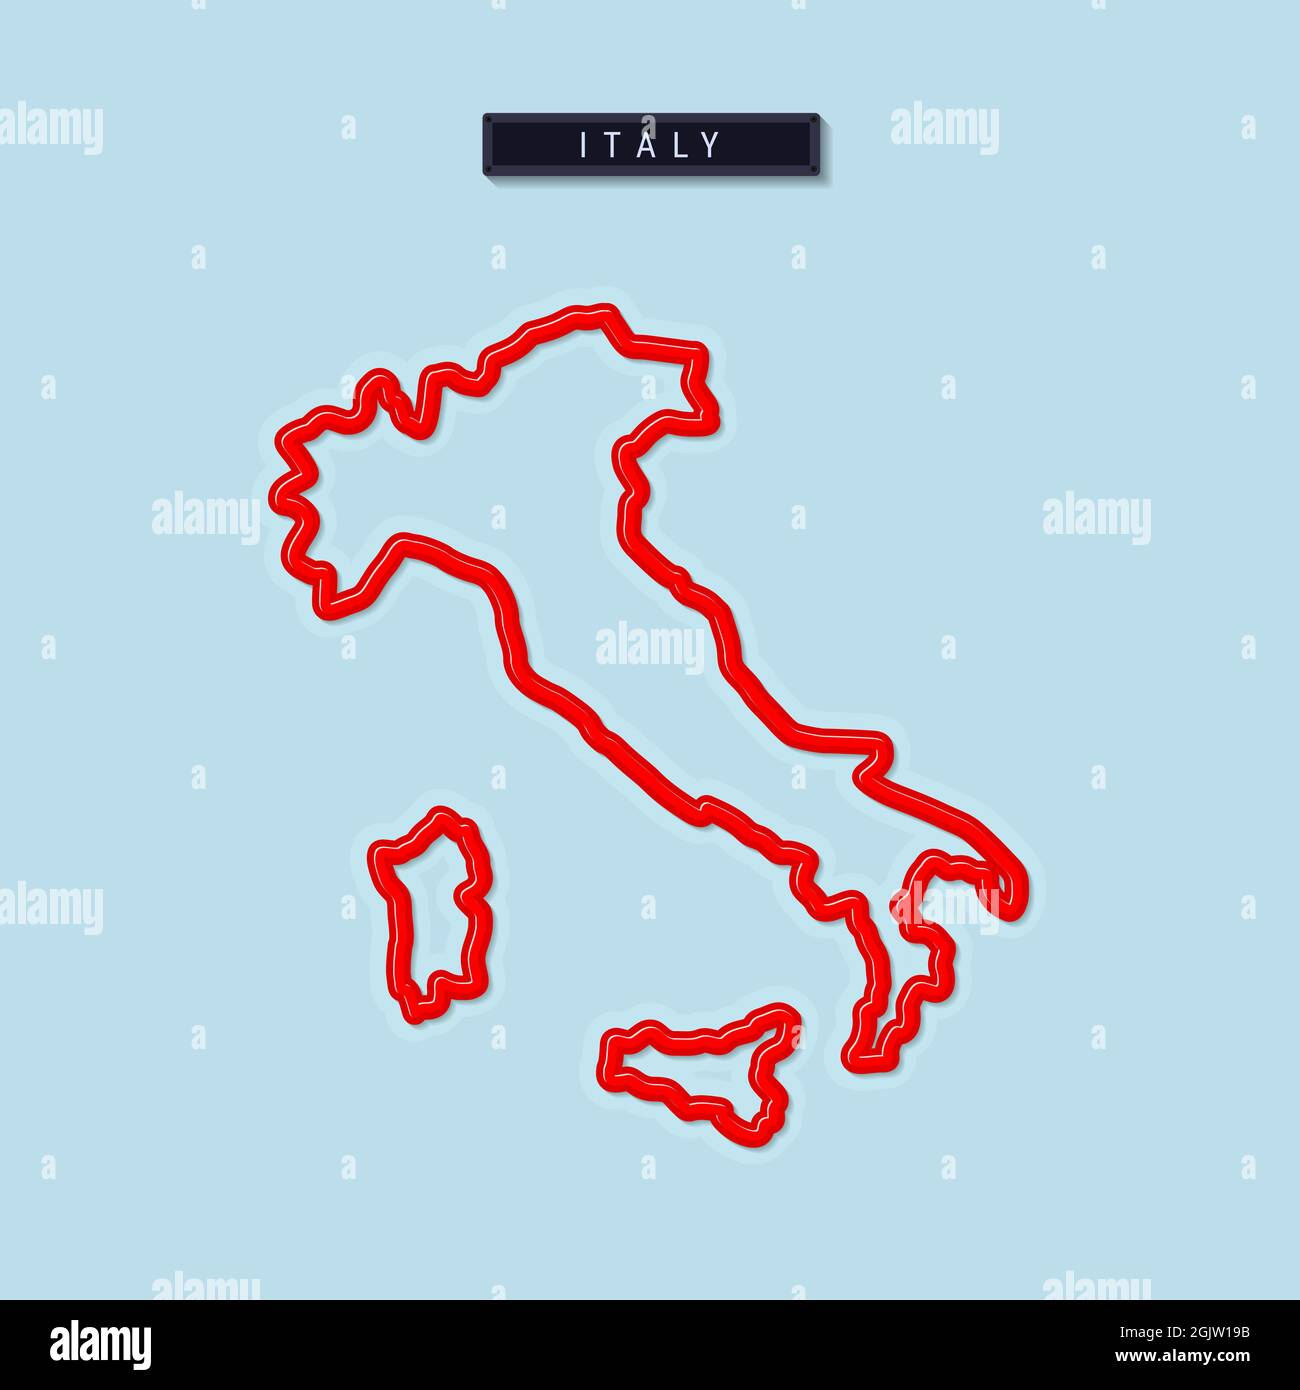 Mappa a linee grassetto per l'Italia. Bordo rosso lucido con ombra morbida.  Targhetta del paese. Illustrazione Foto stock - Alamy